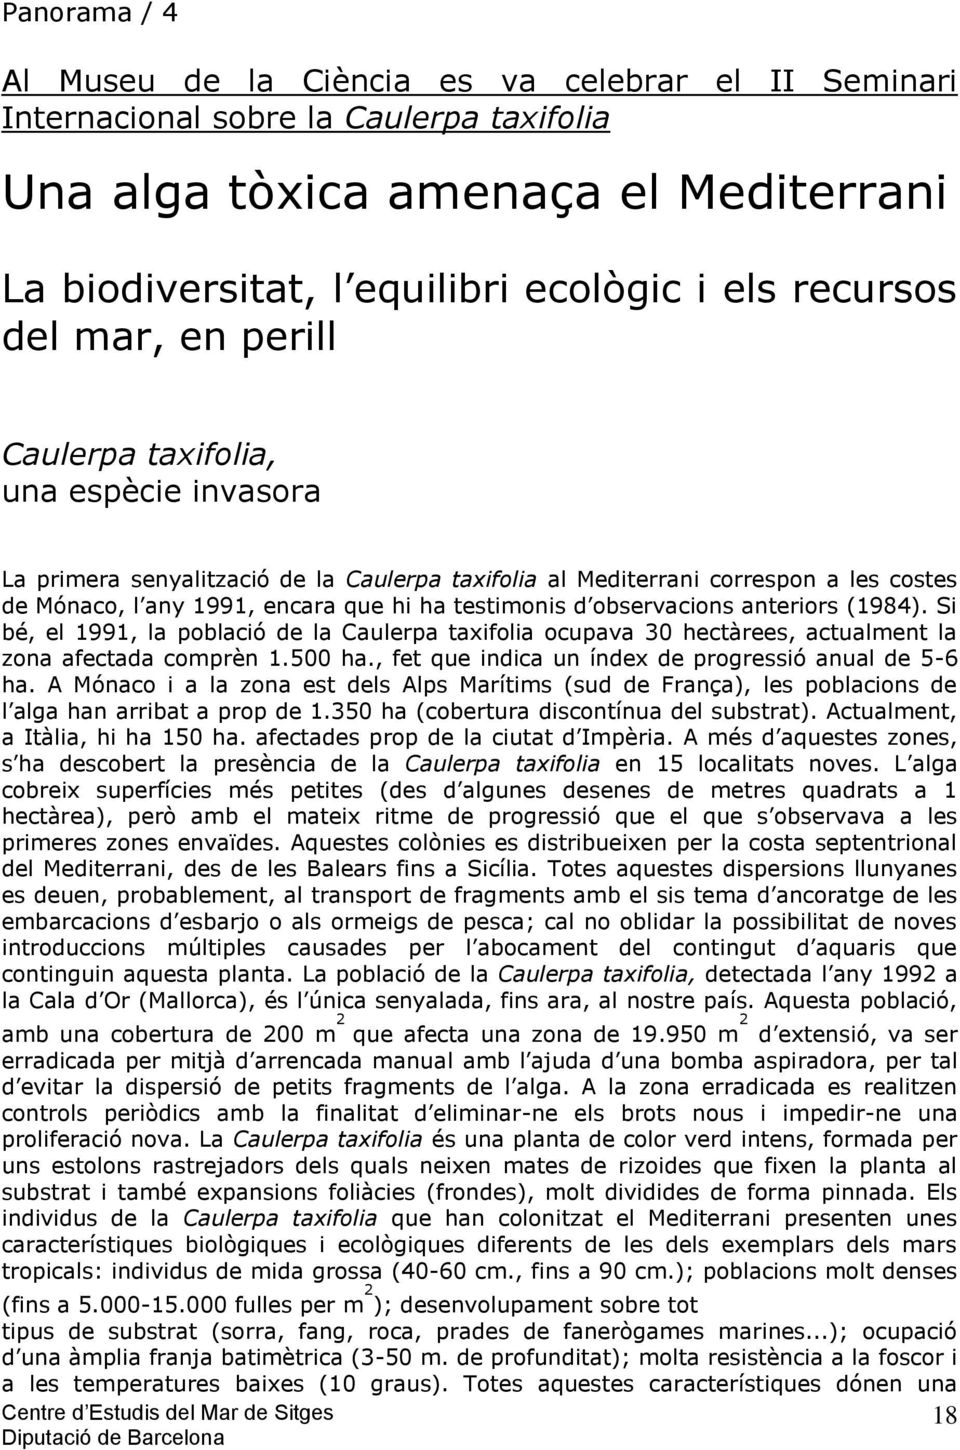 testimonis d observacions anteriors (1984). Si bé, el 1991, la població de la Caulerpa taxifolia ocupava 30 hectàrees, actualment la zona afectada comprèn 1.500 ha.